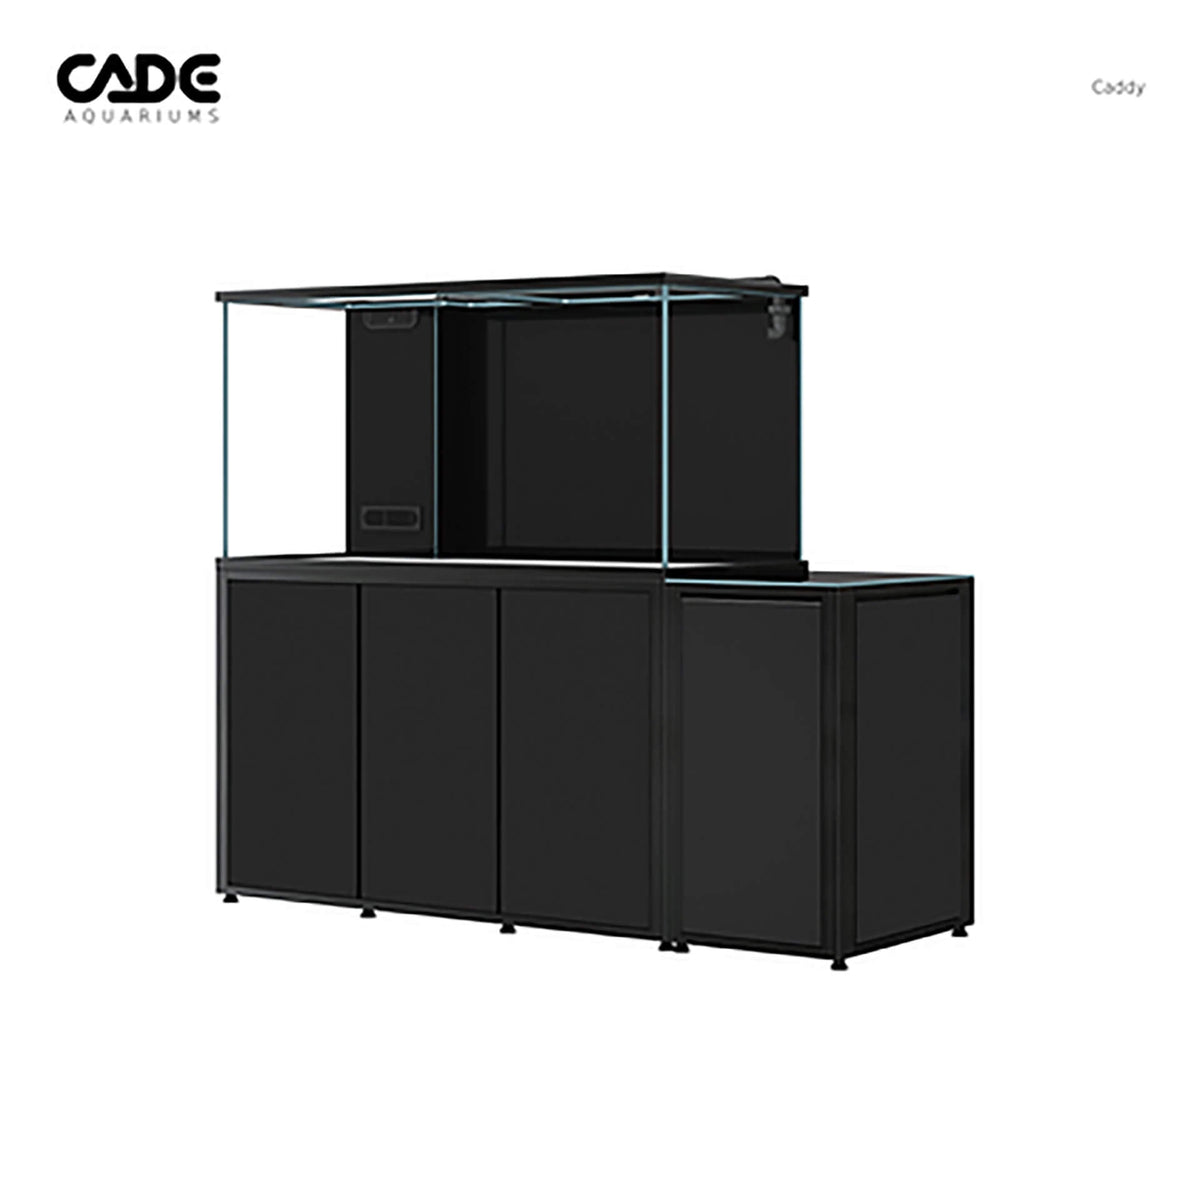 Cade Caddy 750 Black Cabinet** Special Order